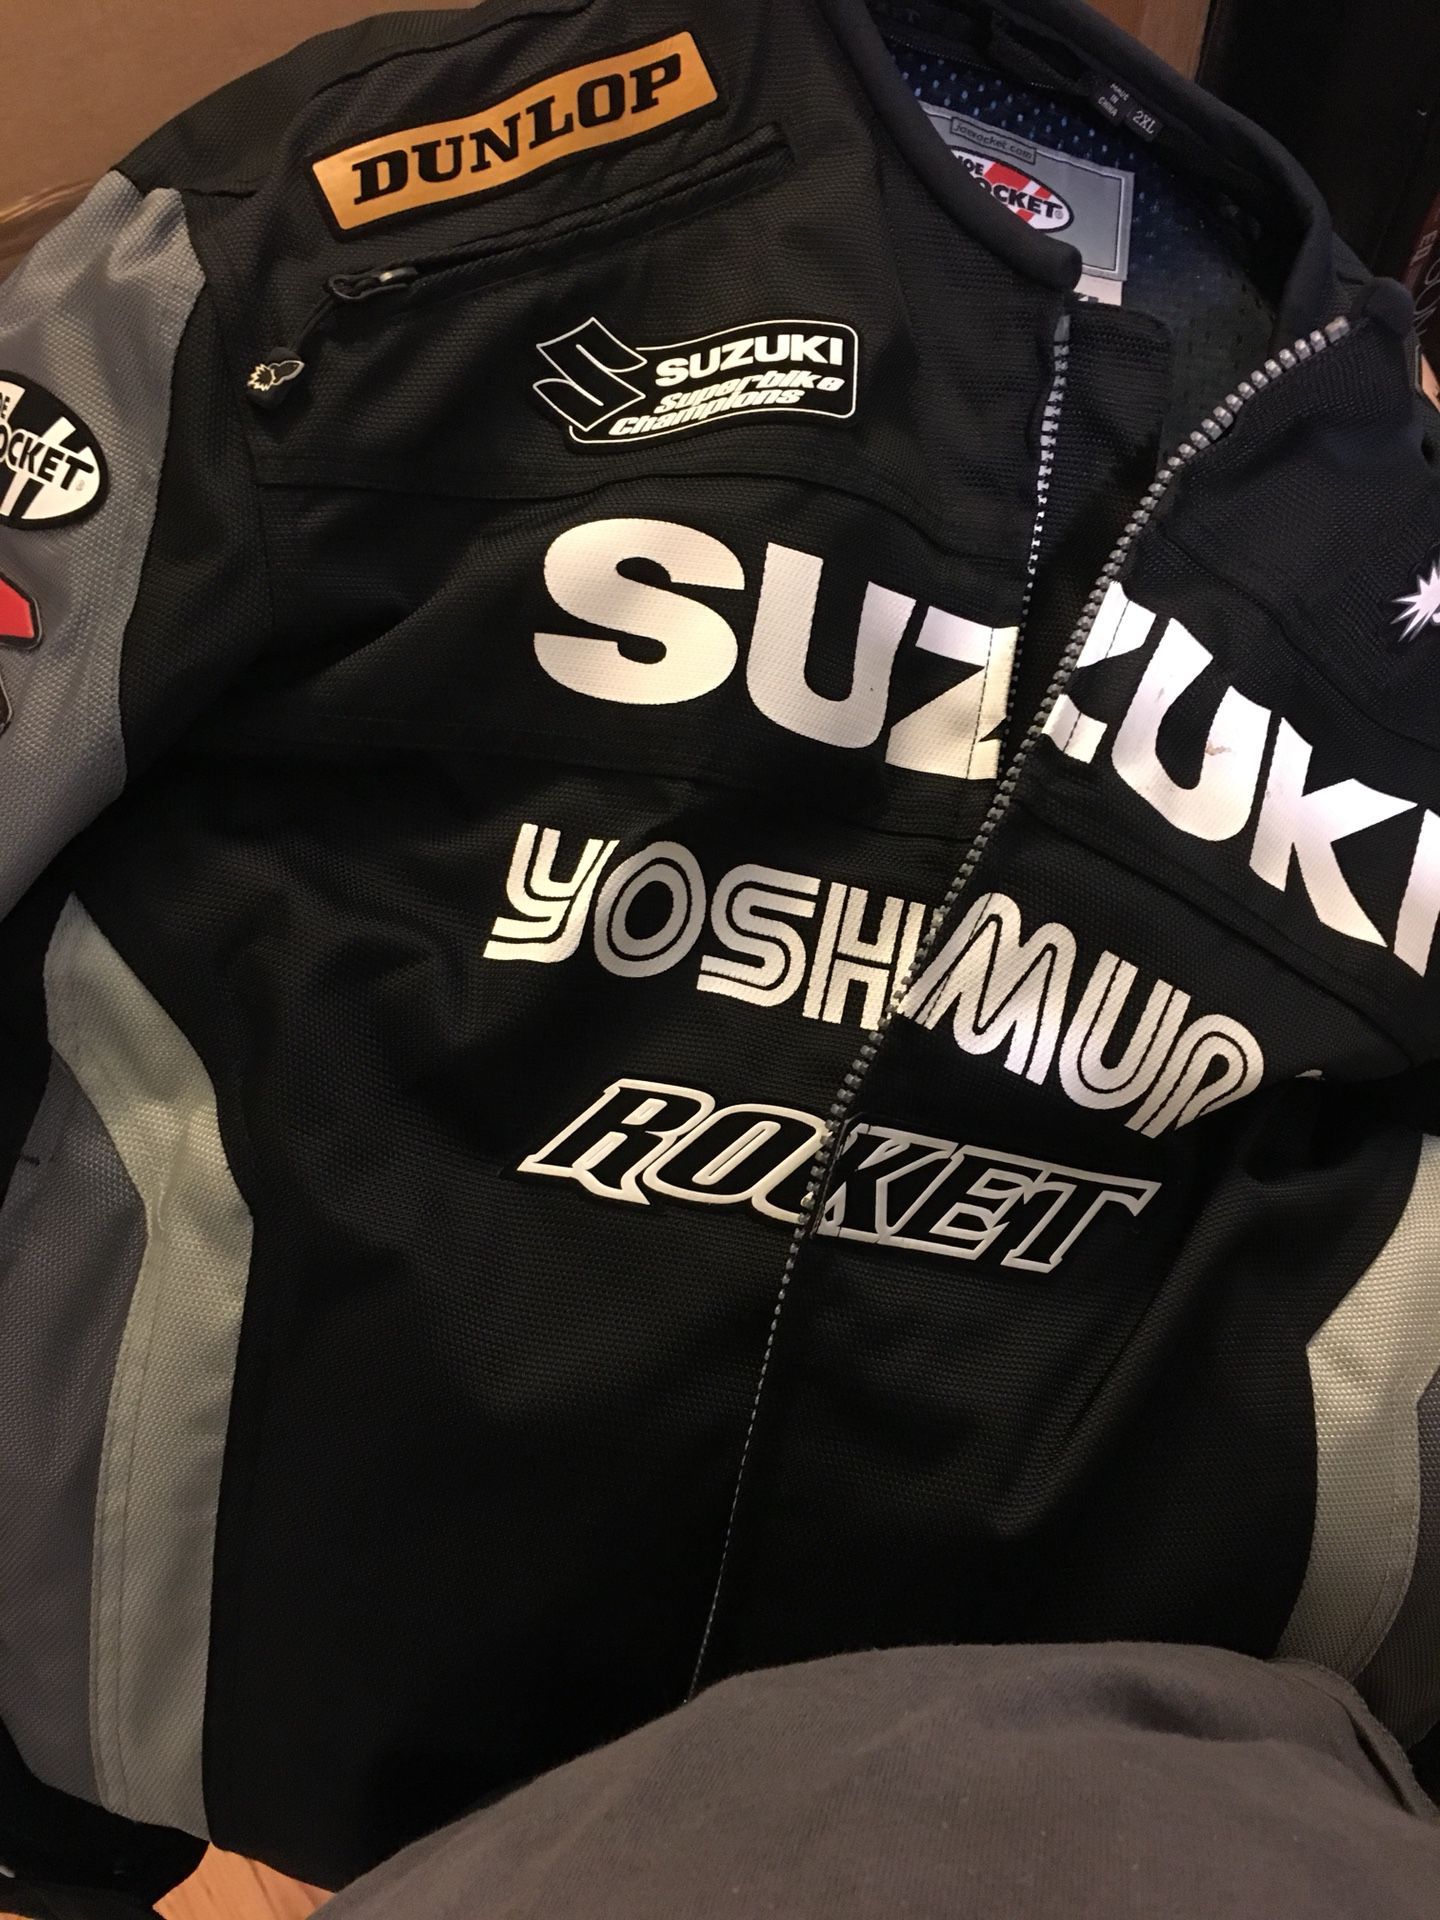 Suzuki GXR official gear size 2x like new